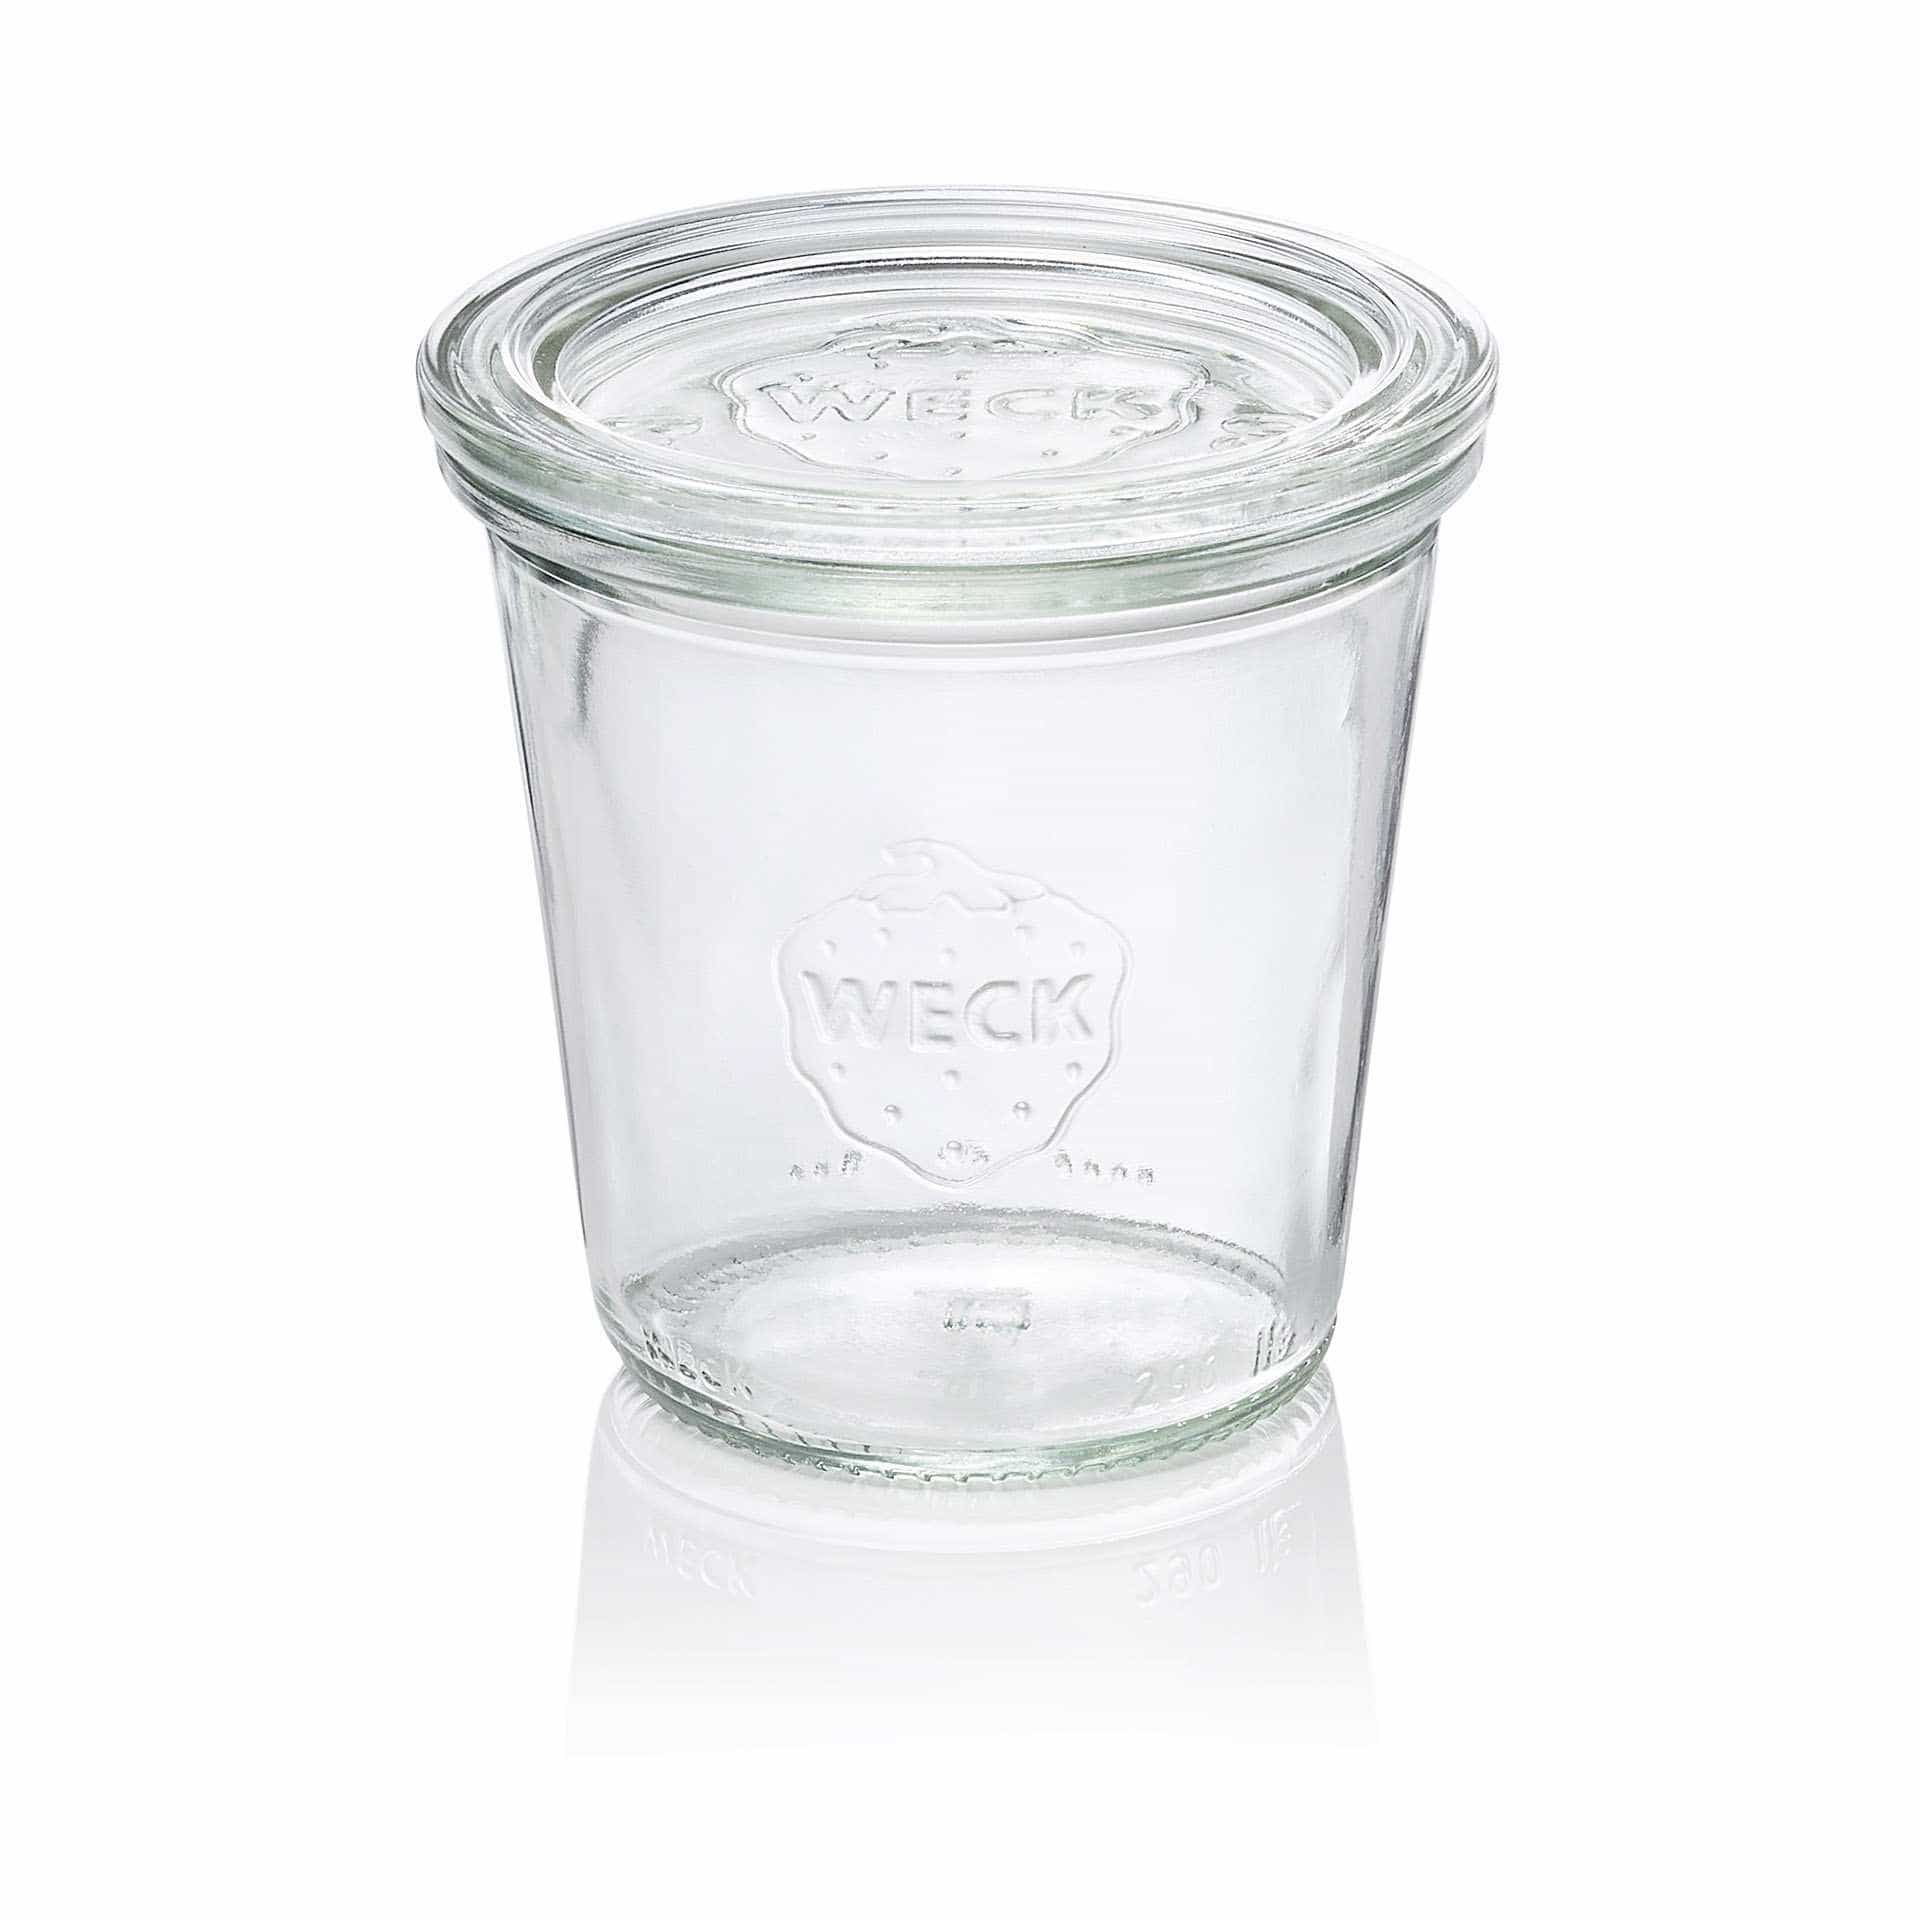 Sturzglas - Set á 6 Stück - Serie Overturn - Abm. 8,7 cm - Ø oben / unten 8,0 / 8,7 cm - Inhalt 0,29 l - Glas - 900-A